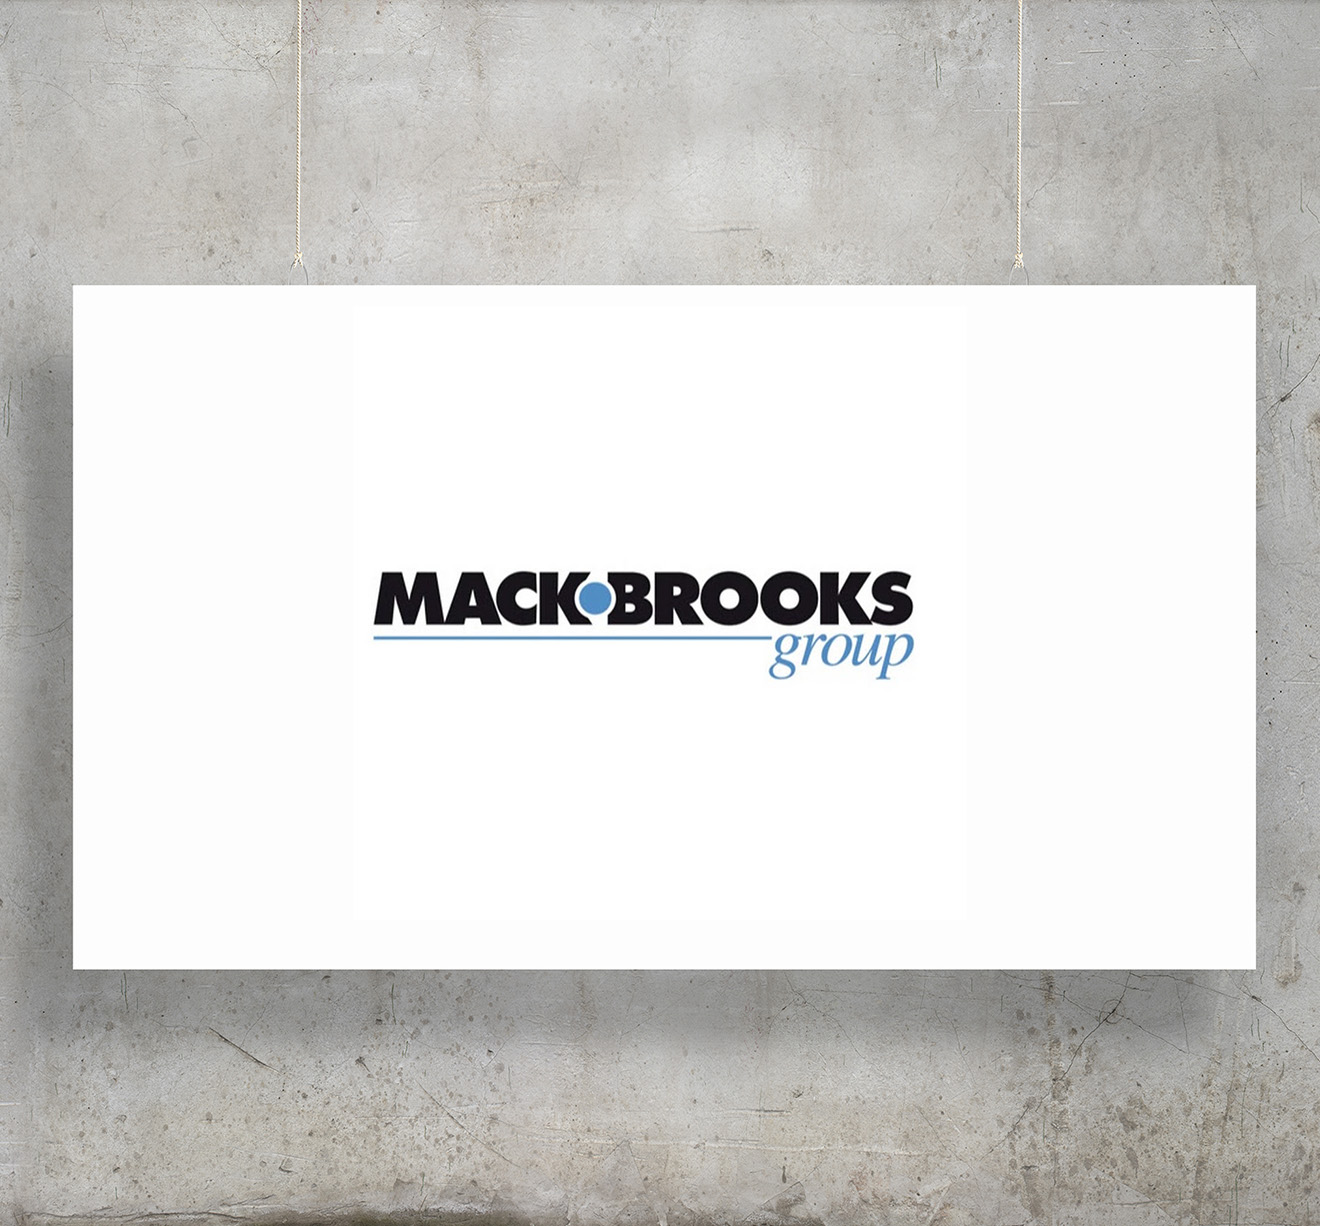 Mack Brooks